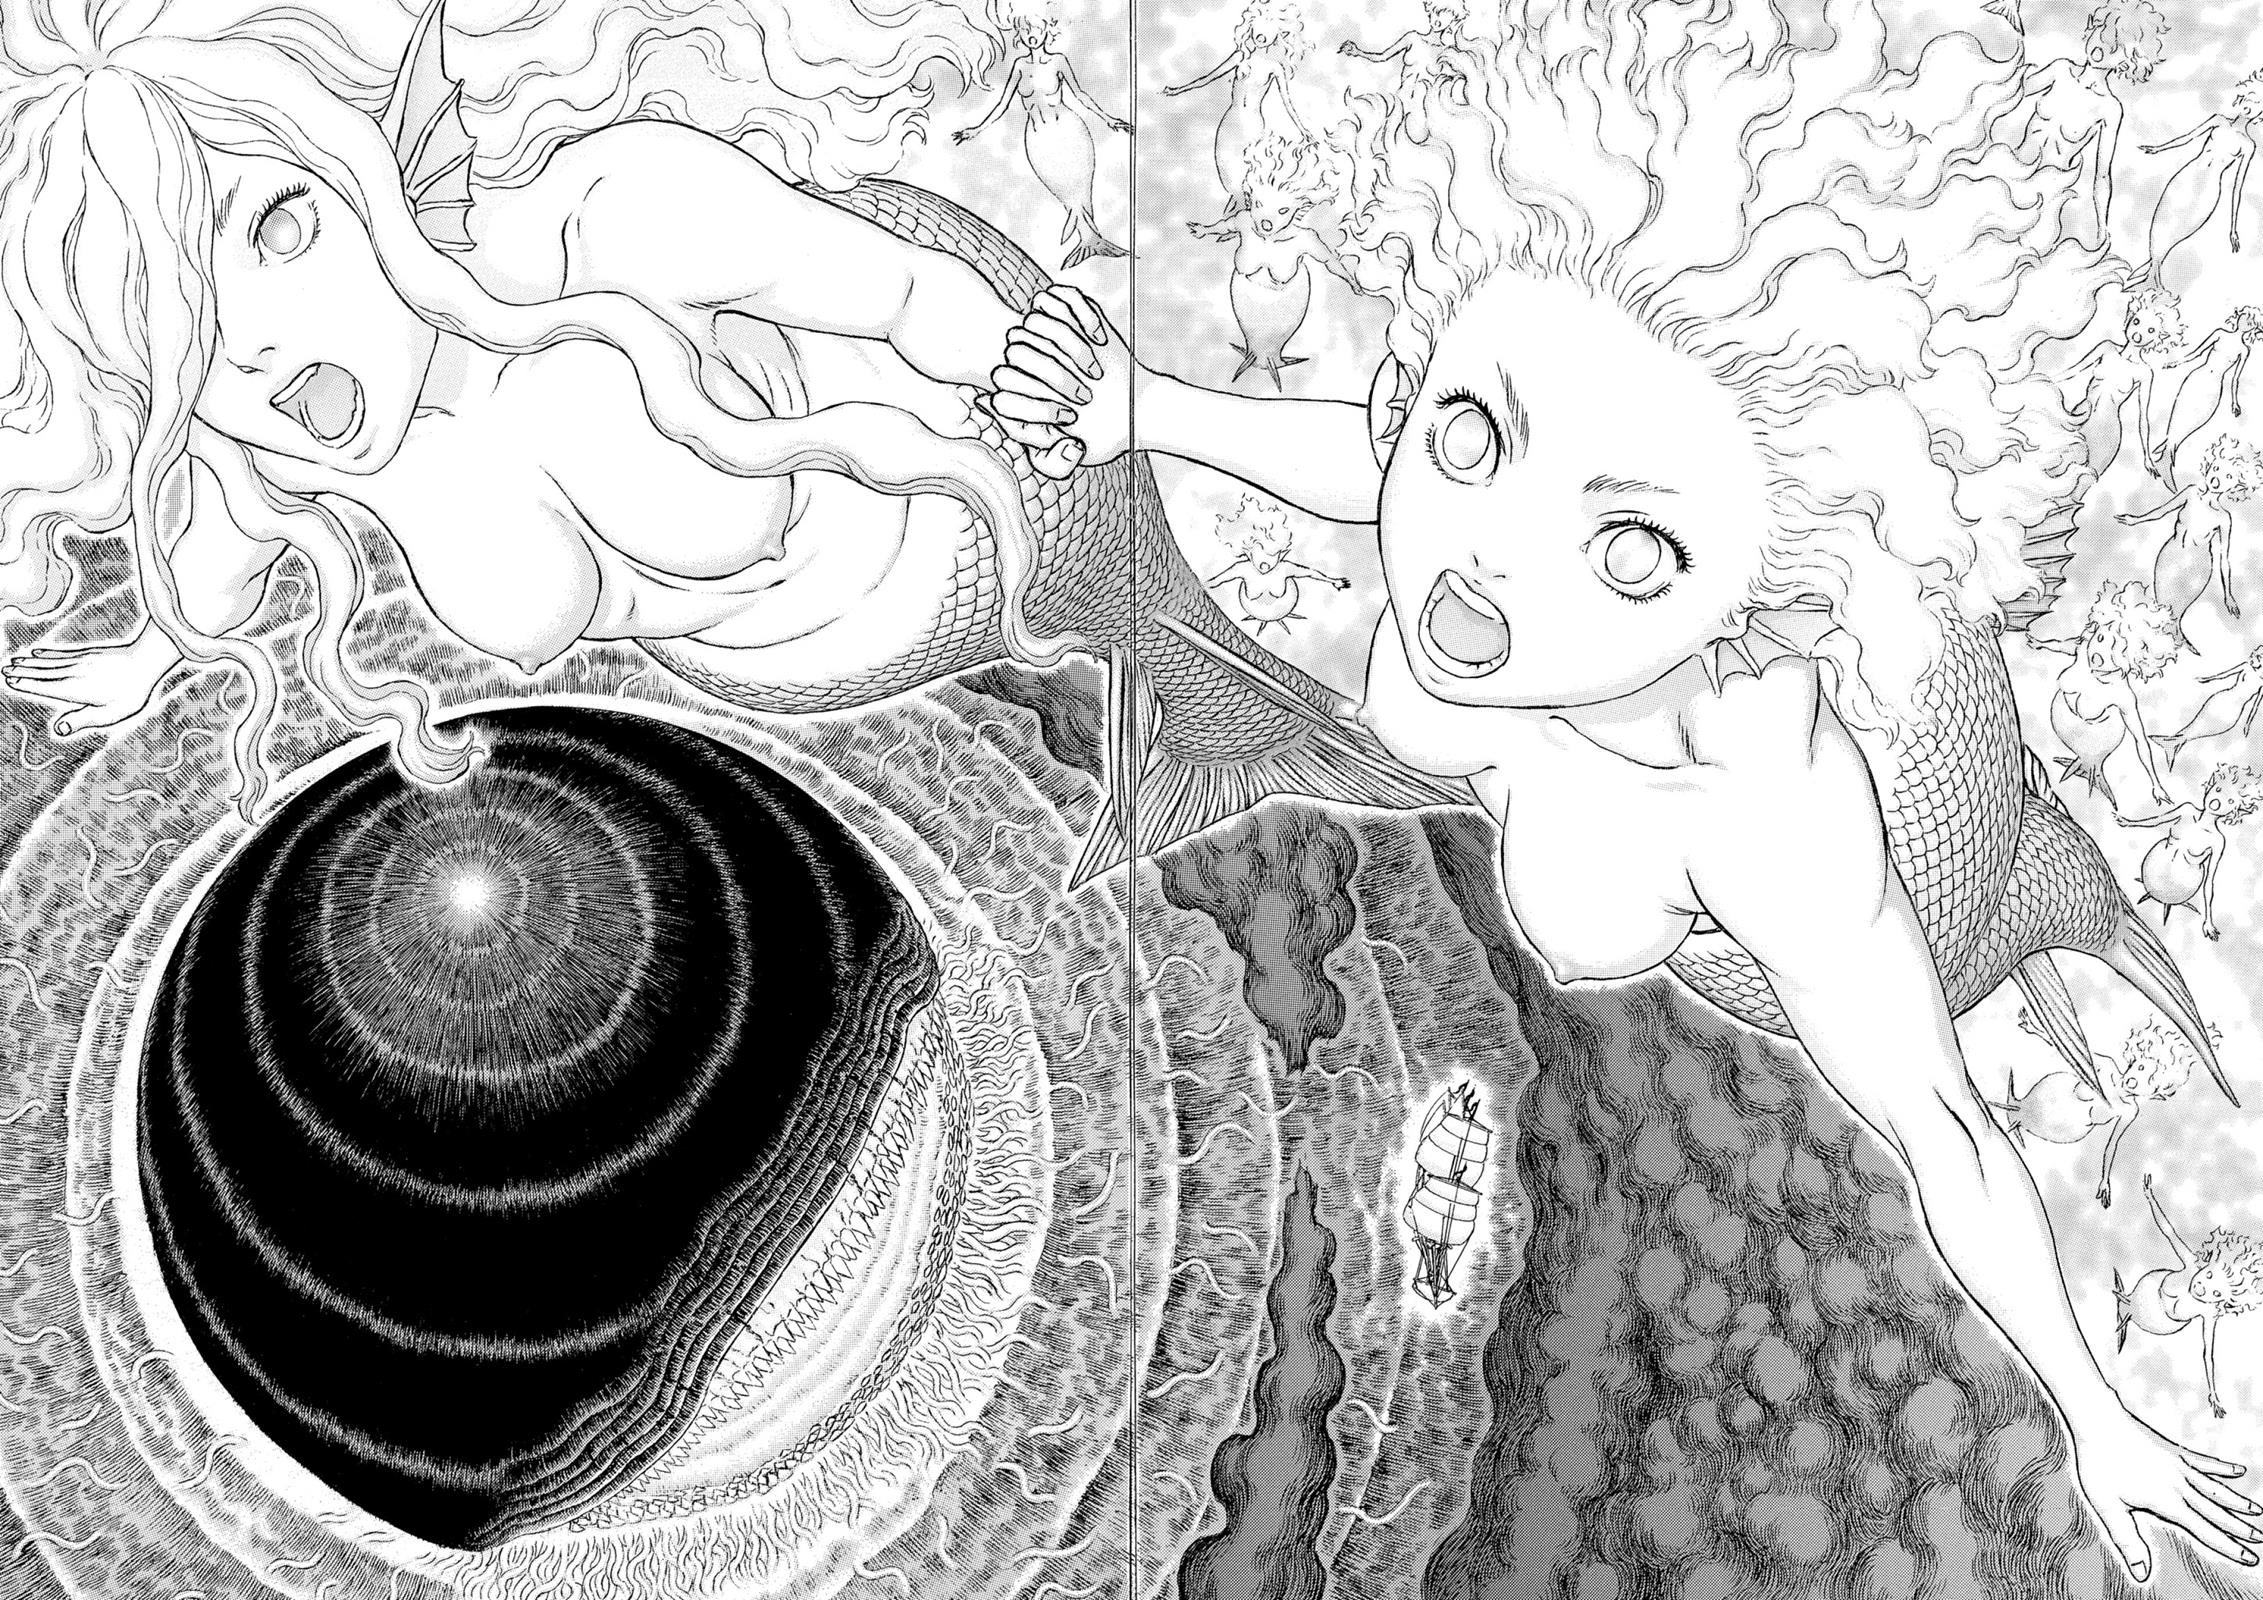 Berserk Manga Chapter 326 image 05